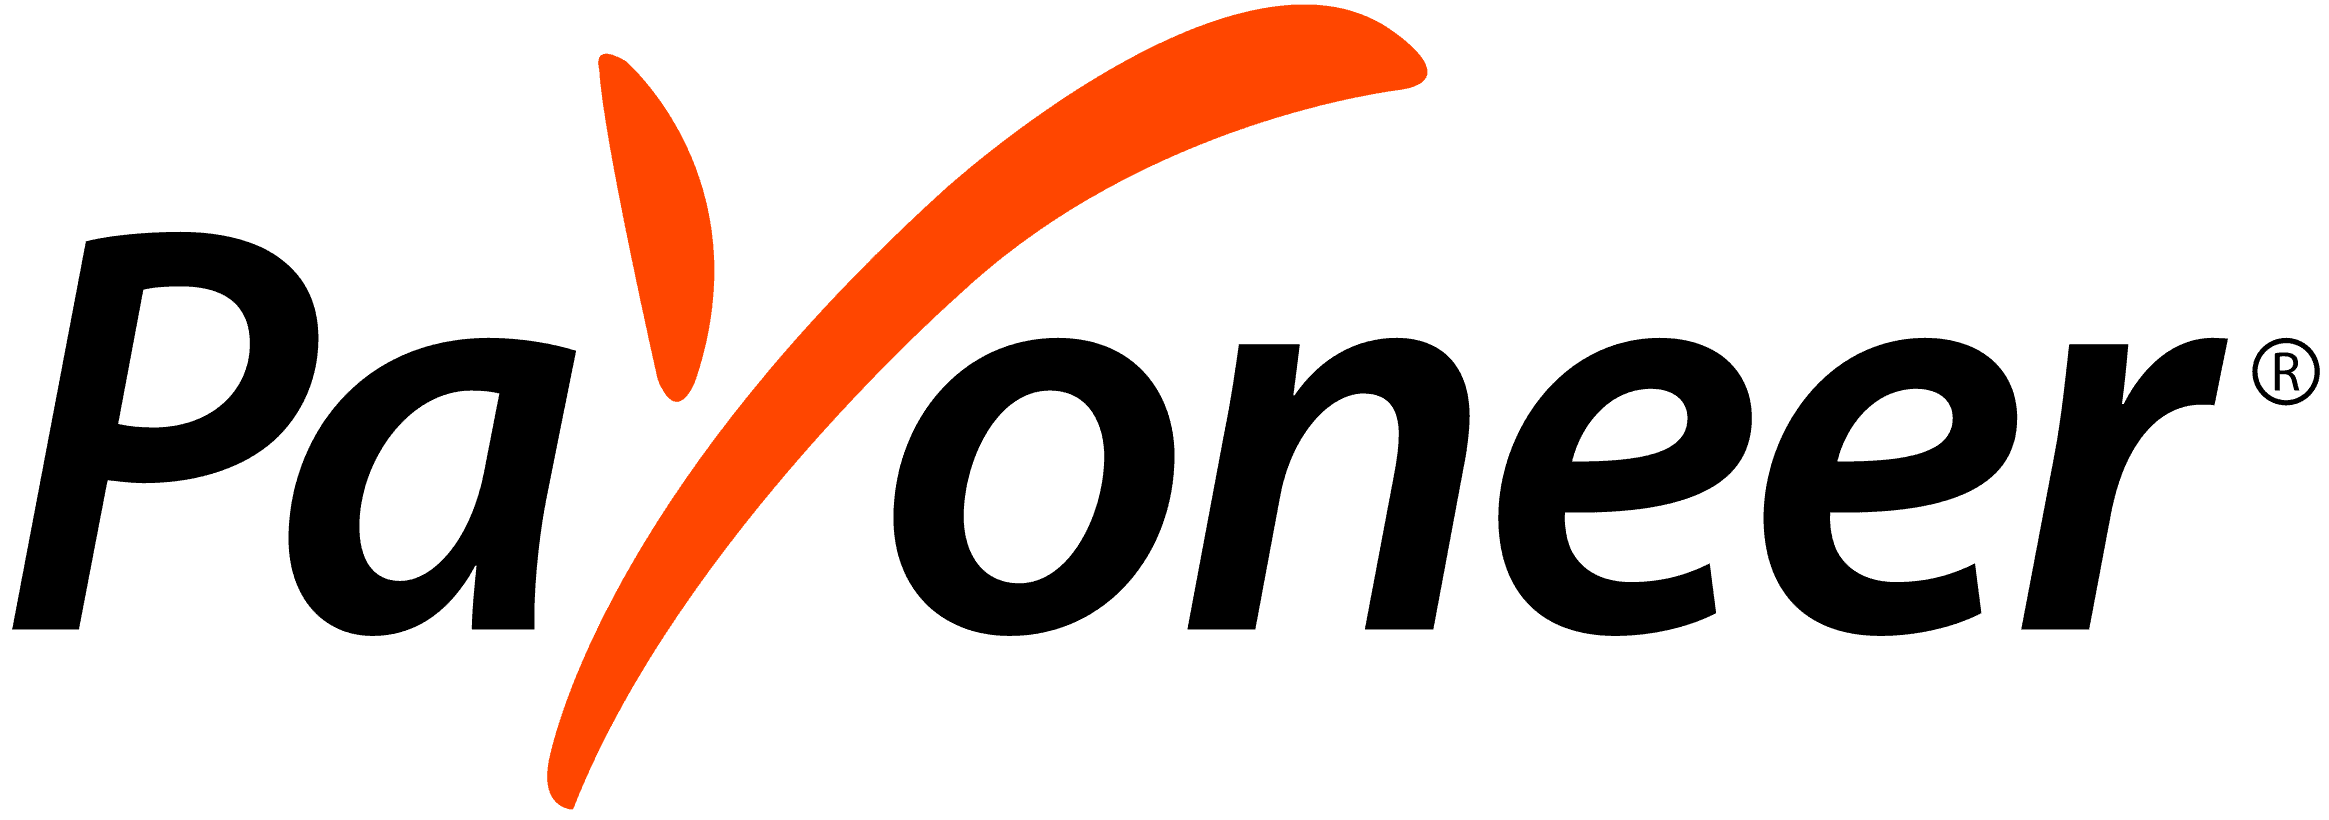 Payoneer-Logo